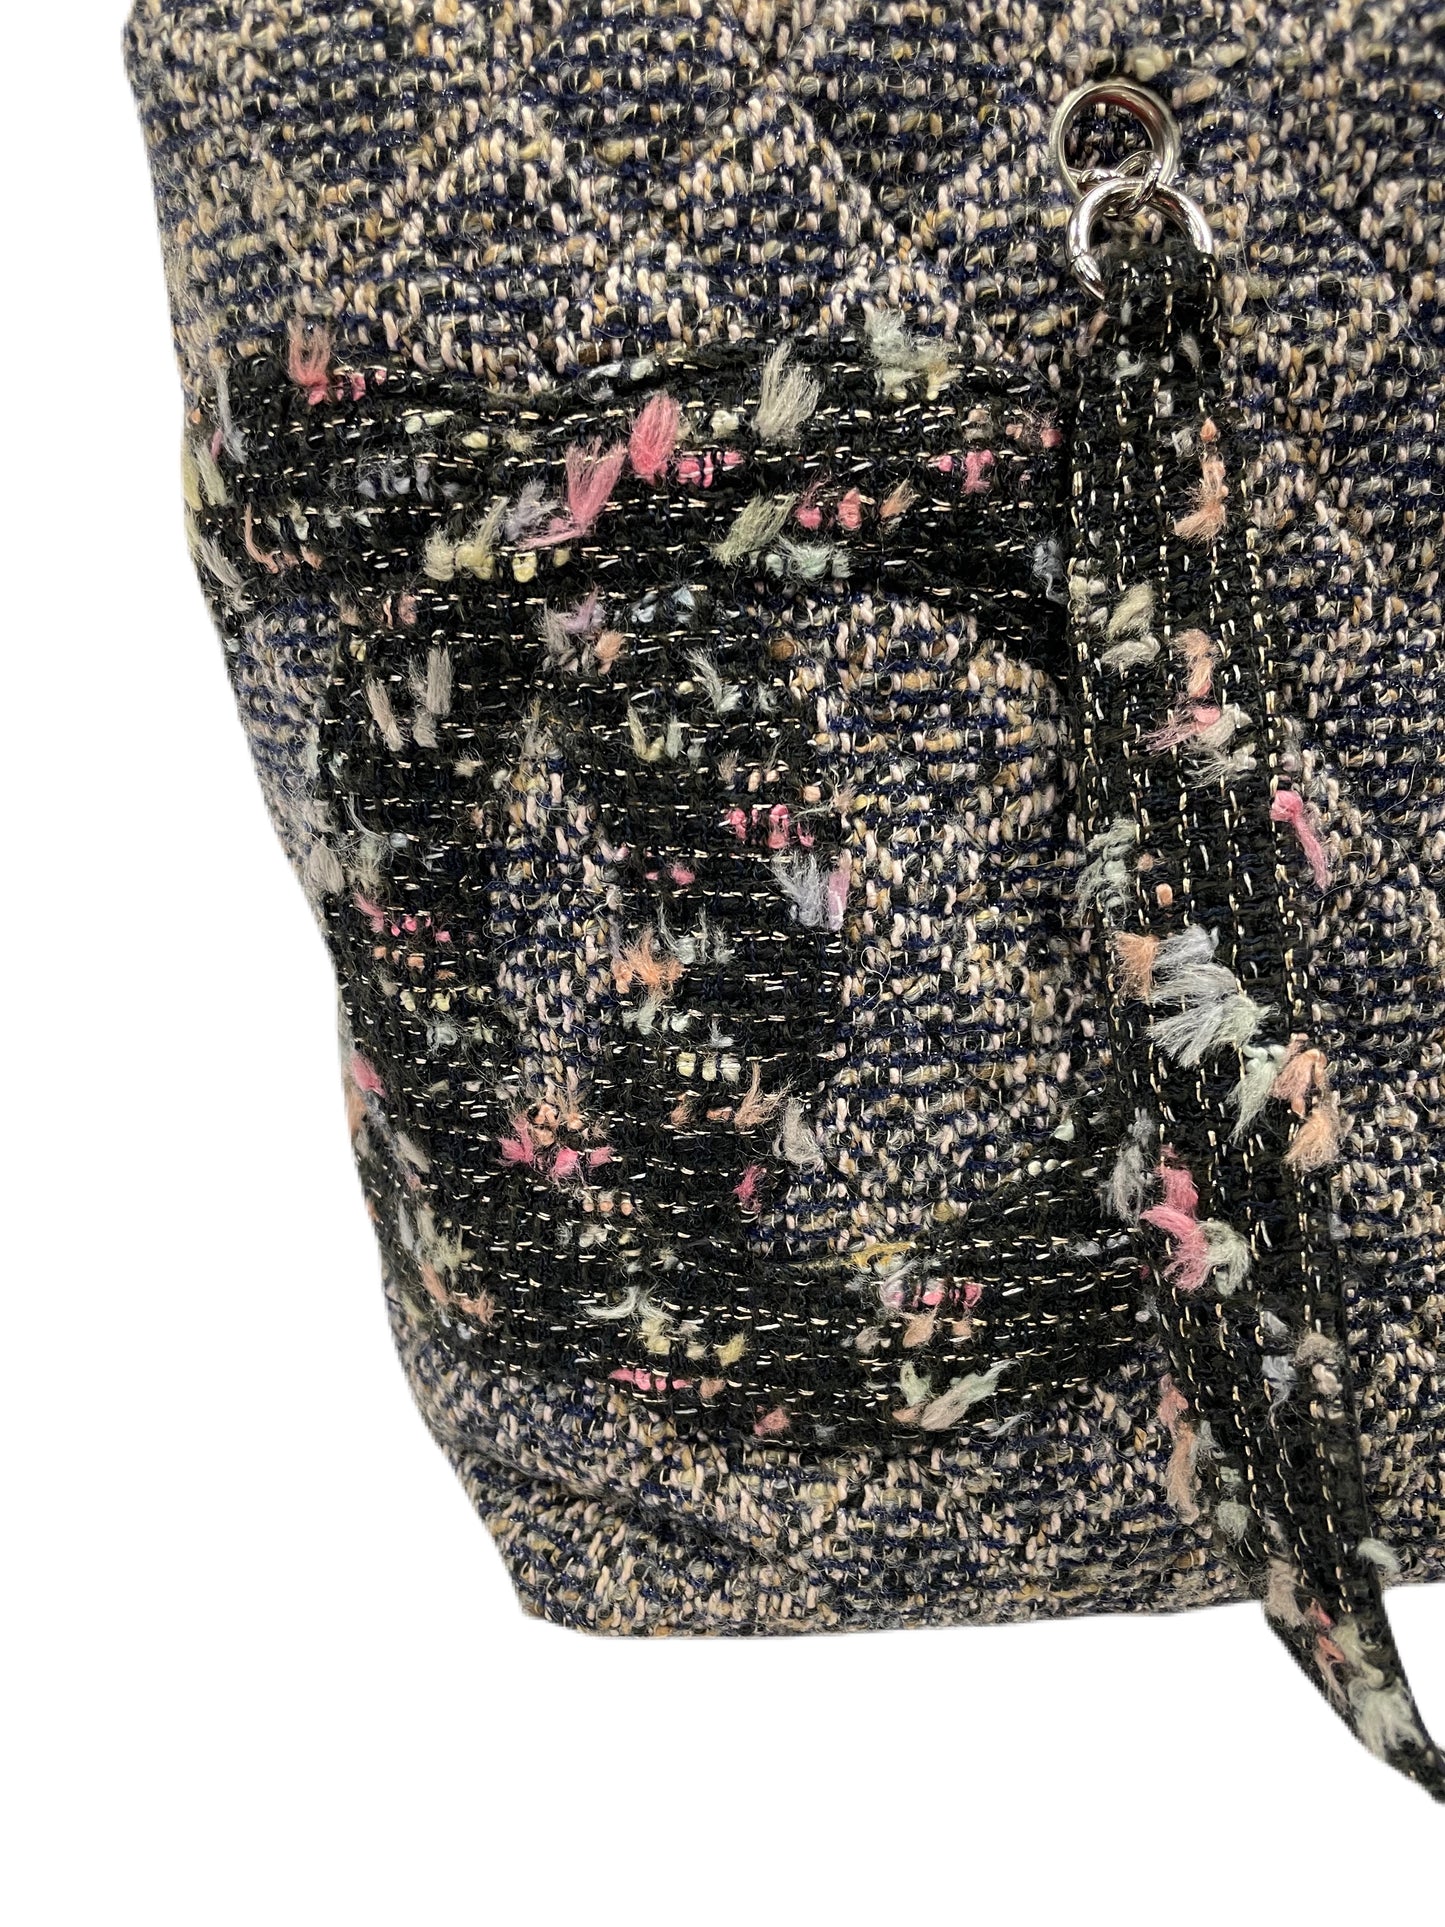 CHANEL Tweed Cambon Tote Multi-Color